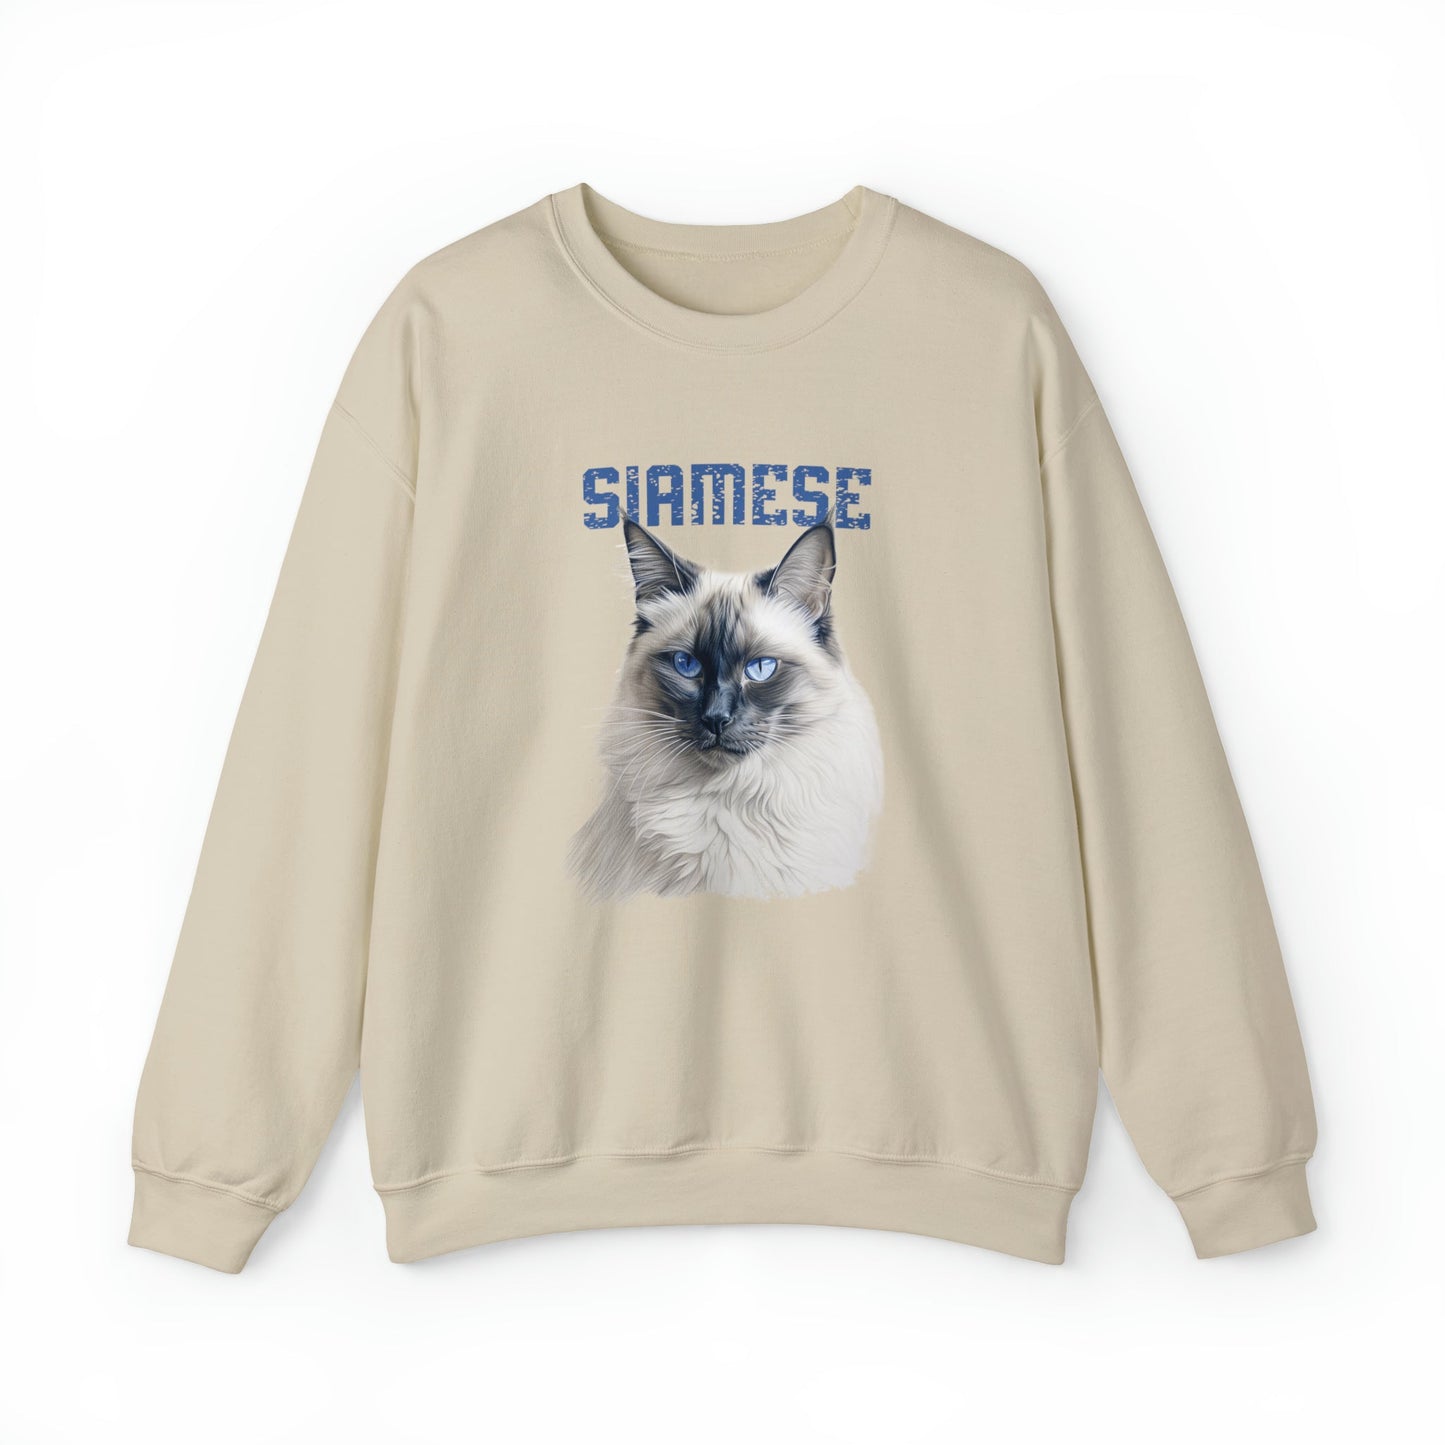 Siamese Cat Mom Sweatshirt, Siamese Cat Shirt, Purrfect Cat Gift Mom, Lovely Gray Cat - FlooredByArt